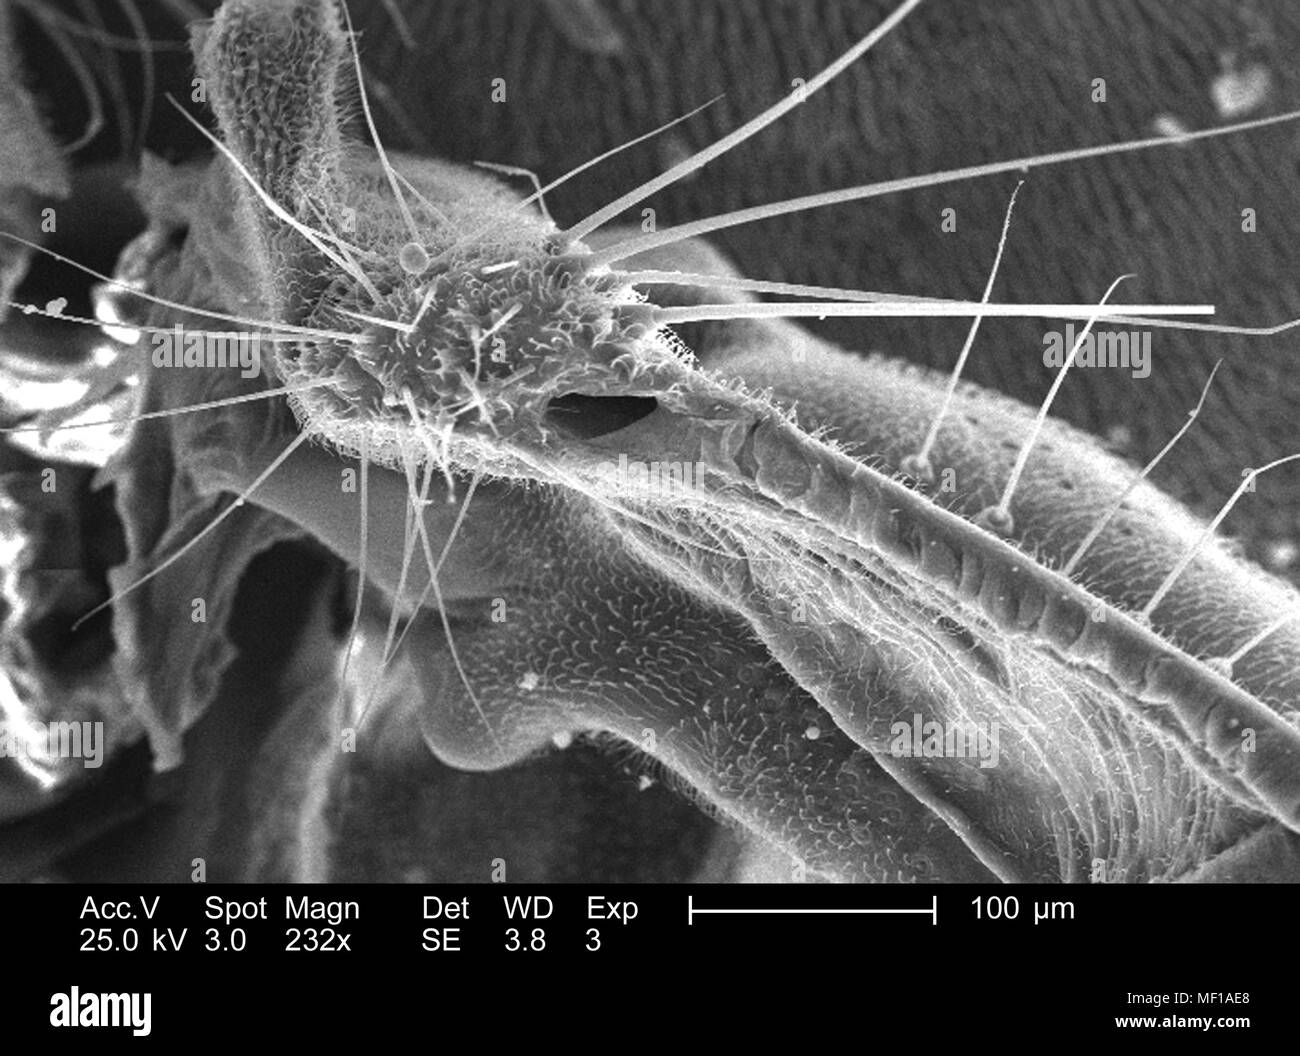 Dettagli morfologiche e i peli sensoriali (Setae) trovati su un parafango attacco di una libellula, raffigurato nella 232x di scansione ingrandita al microscopio elettronico (SEM) immagine, 2005. Immagine cortesia di centri per il controllo delle malattie (CDC) / Janice Haney Carr, Connie fiori. () Foto Stock